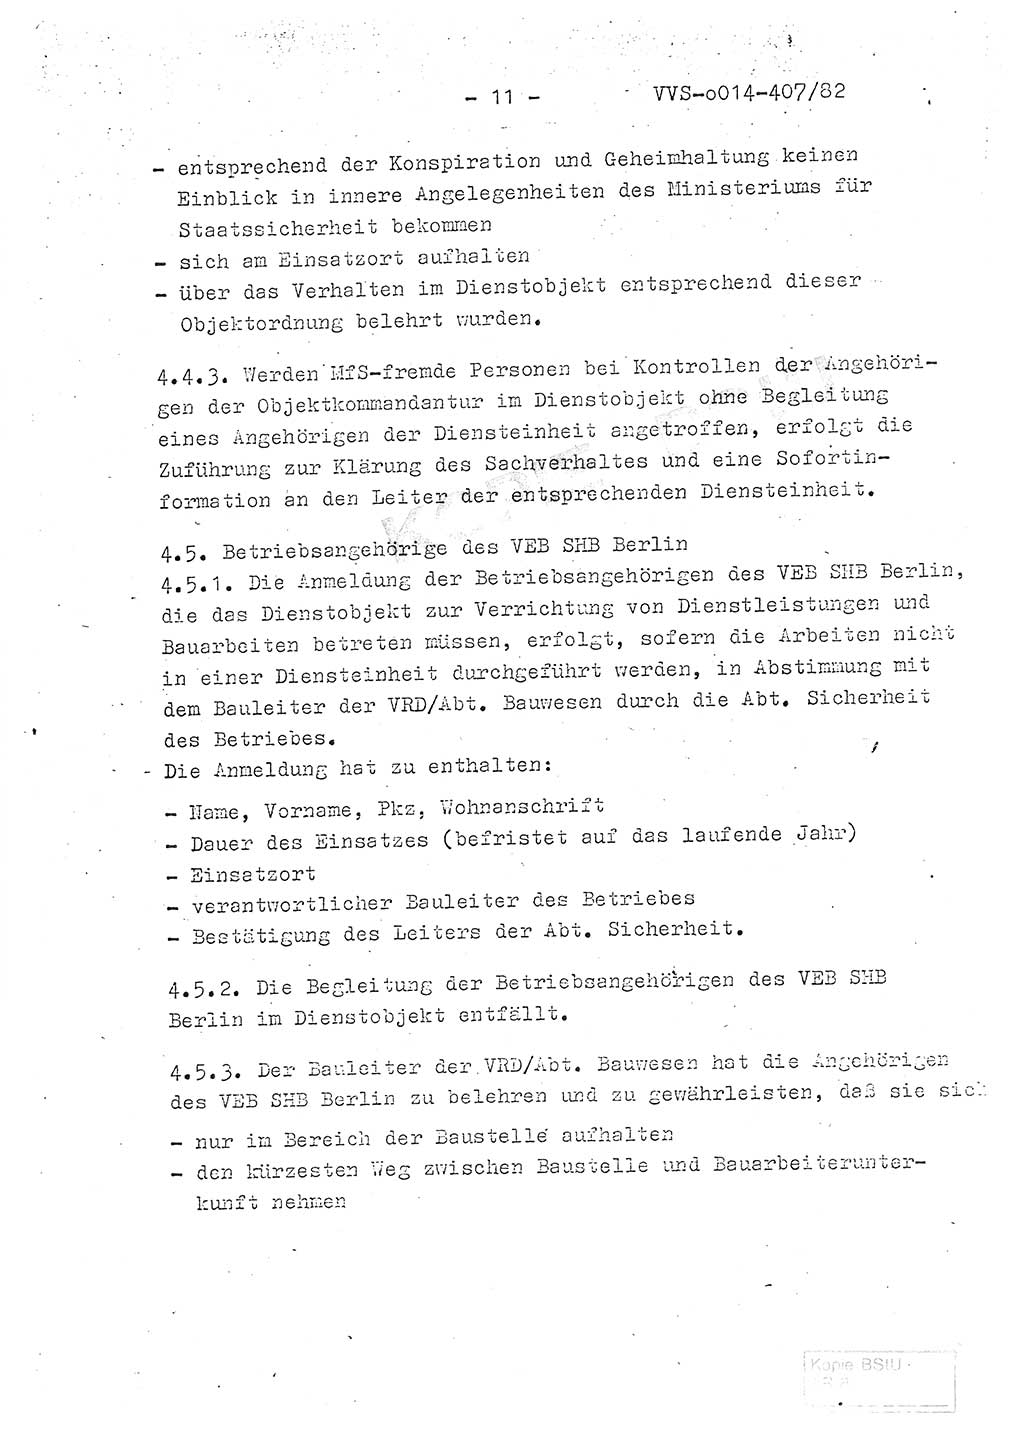 Ordnung Nr. 1/82 zur Gewährleistung von Sicherheit und Ordnung für das Objekt Berlin-Hohenschönhausen, Freienwalder Straße - Objektordnung -, Ministerium für Staatssicherheit (MfS) [Deutsche Demokratische Republik (DDR)], Hauptabteilung (HA) Ⅸ, Leiter, Verantwortlicher für das Dienstobjekt (DO) Berlin-Hohenschönhausen, Freienwalder Straße, Vertrauliche Verschlußsache (VVS) o014-407/82, Berlin 1982, Seite 11 (Obj.-Ordn. 1/82 DO Bln.-HsH. MfS DDR HA Ⅸ Ltr. VVS o014-407/82 1982, S. 11)